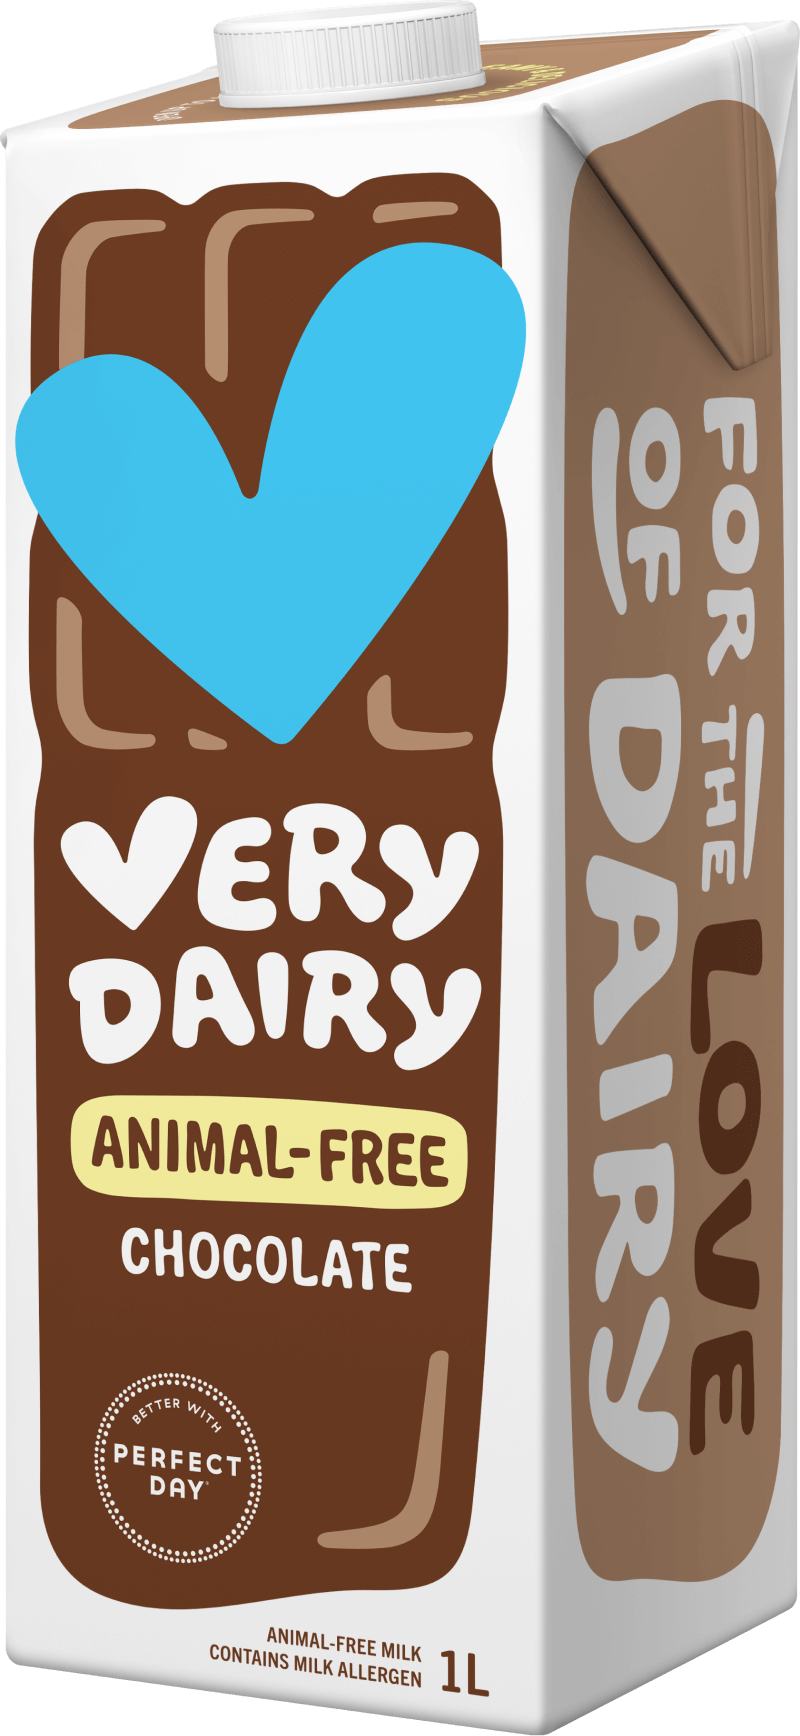 Very Dairy Animal-Free Chocolate